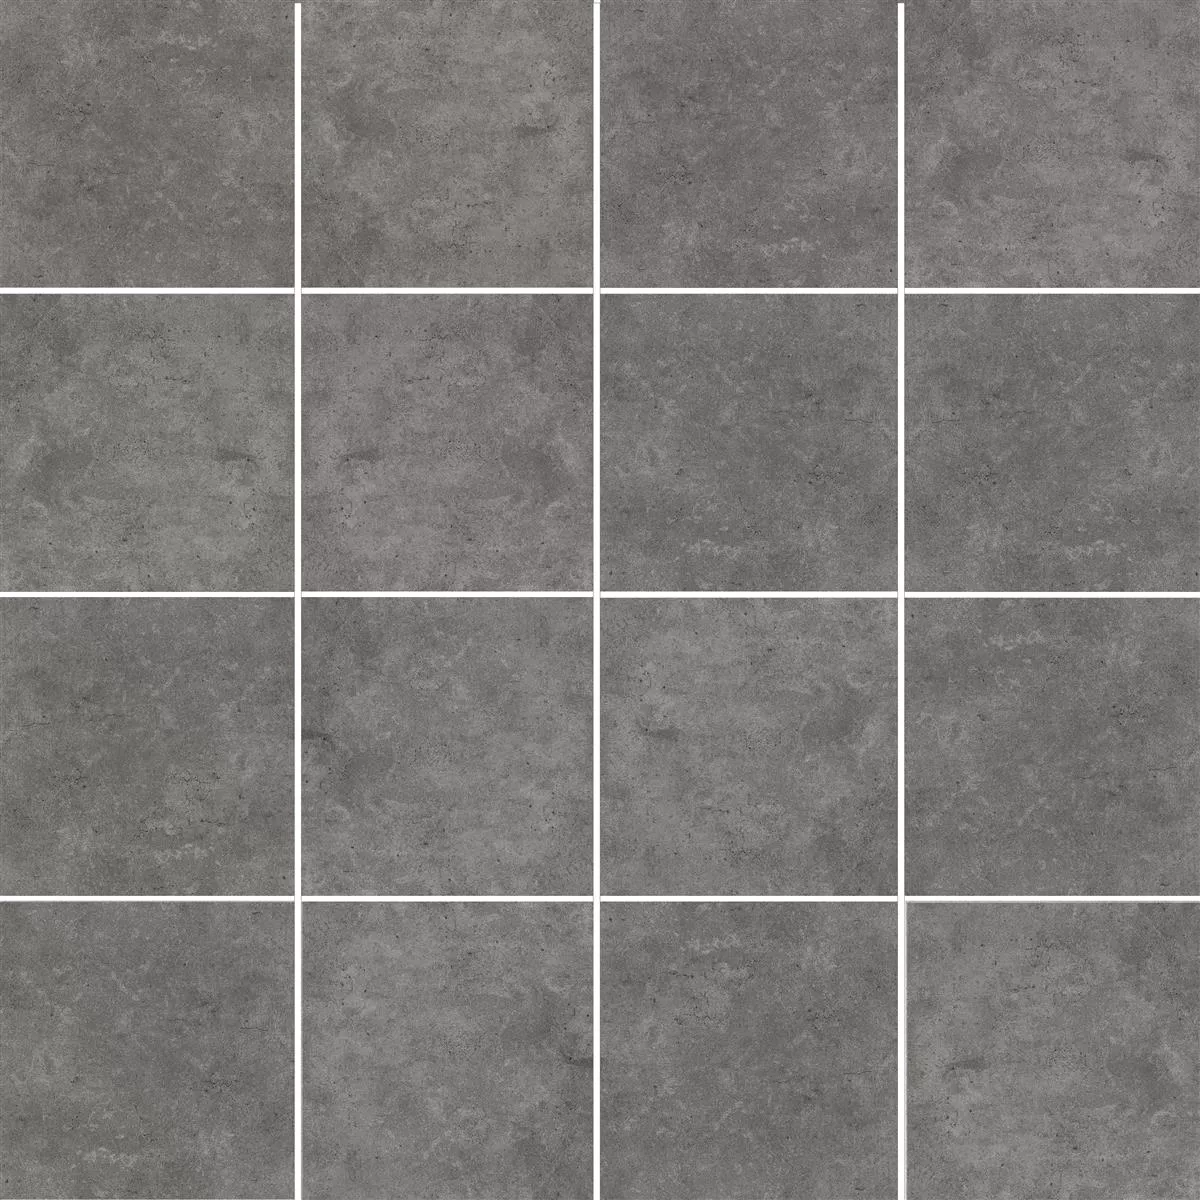 Sample Floor Tiles Jamaica Beton Optic Anthracite 60x60cm